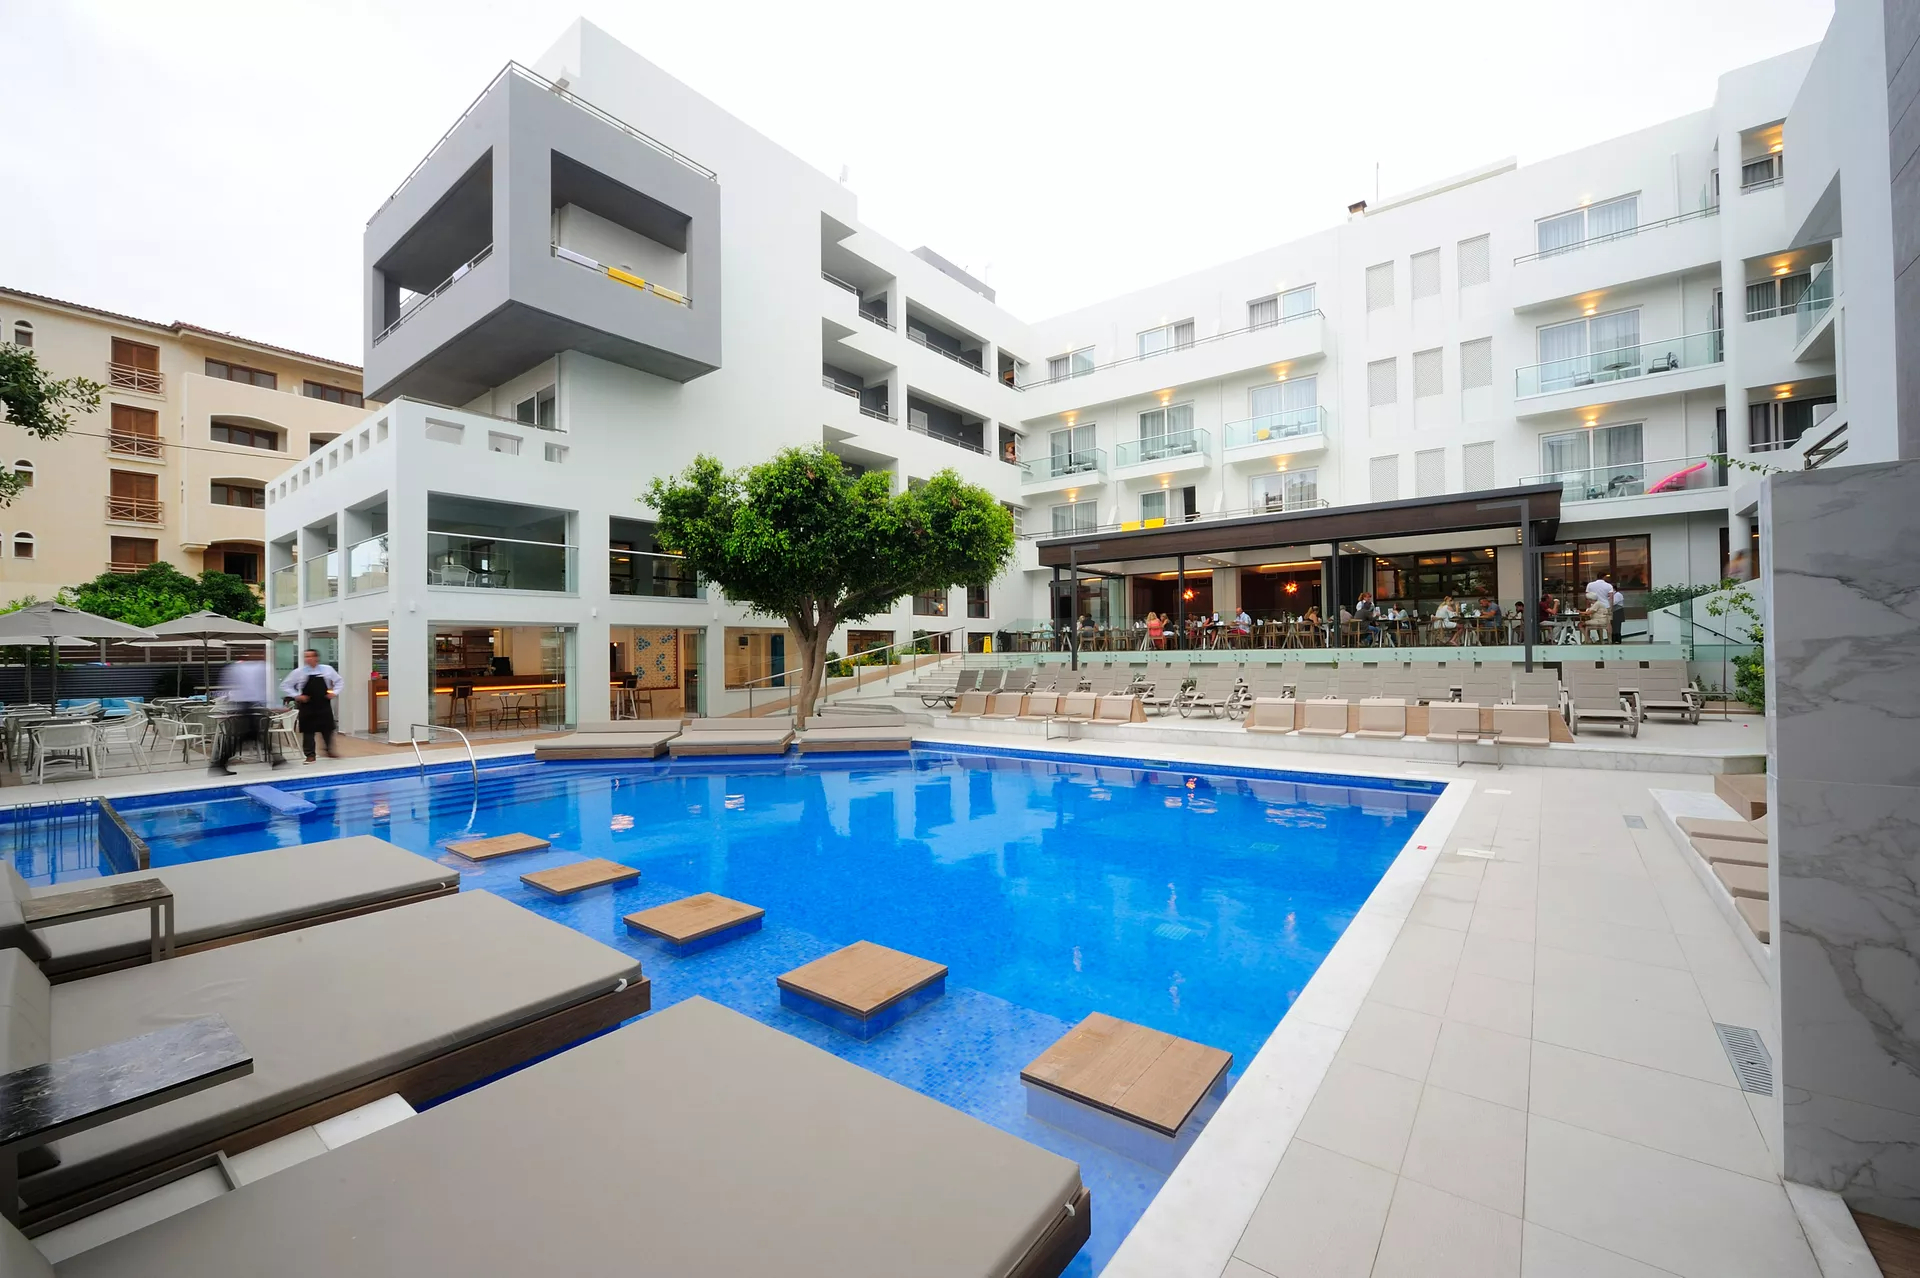 4* Atrium Ambiance Hotel - Ρέθυμνο, Κρήτη ✦ -10% ✦